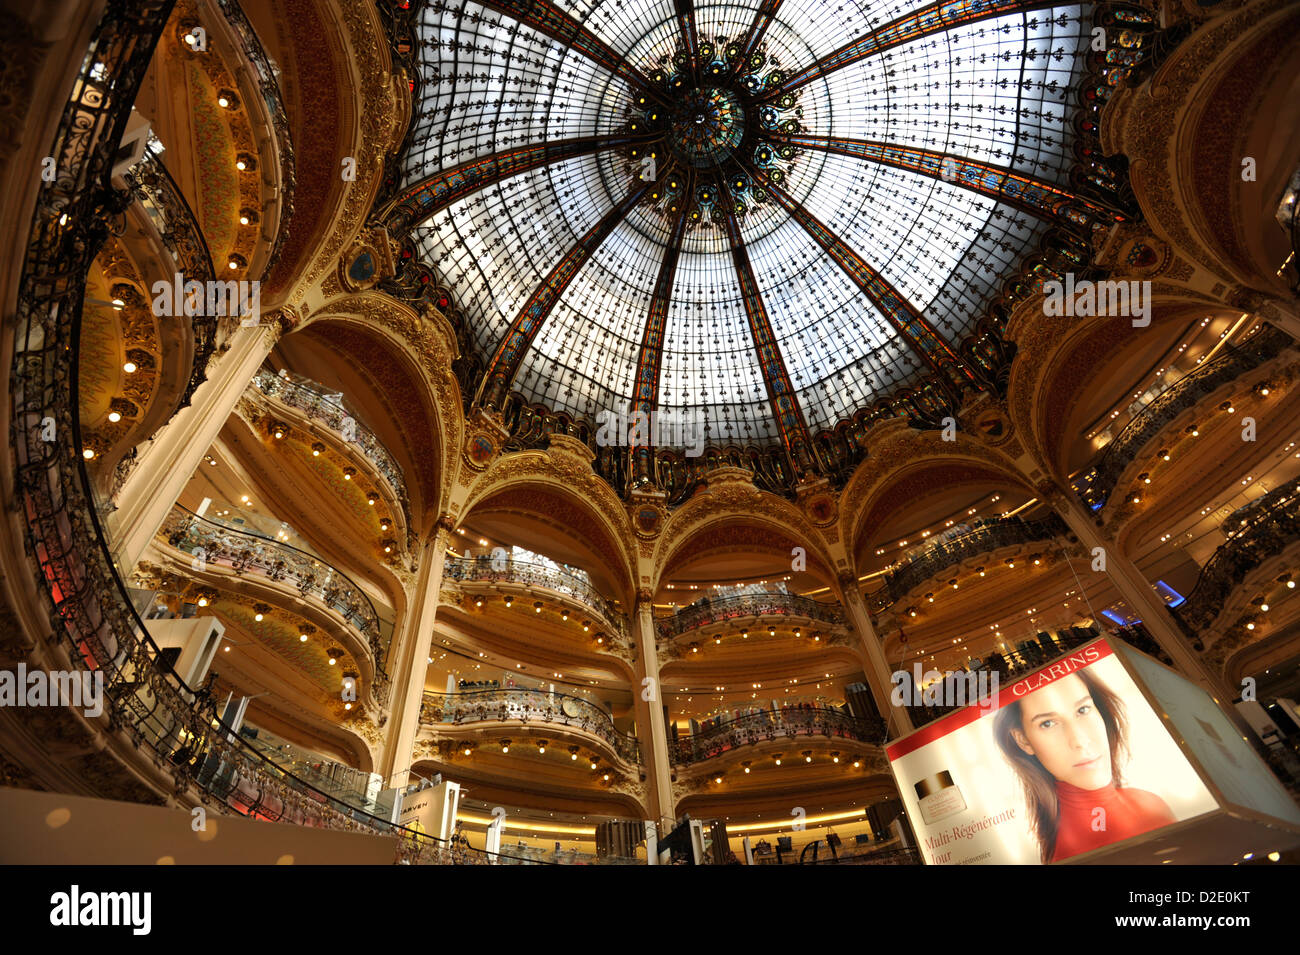 Les intérieurs de le grand magasin Galeries Lafayette, Paris France Banque D'Images